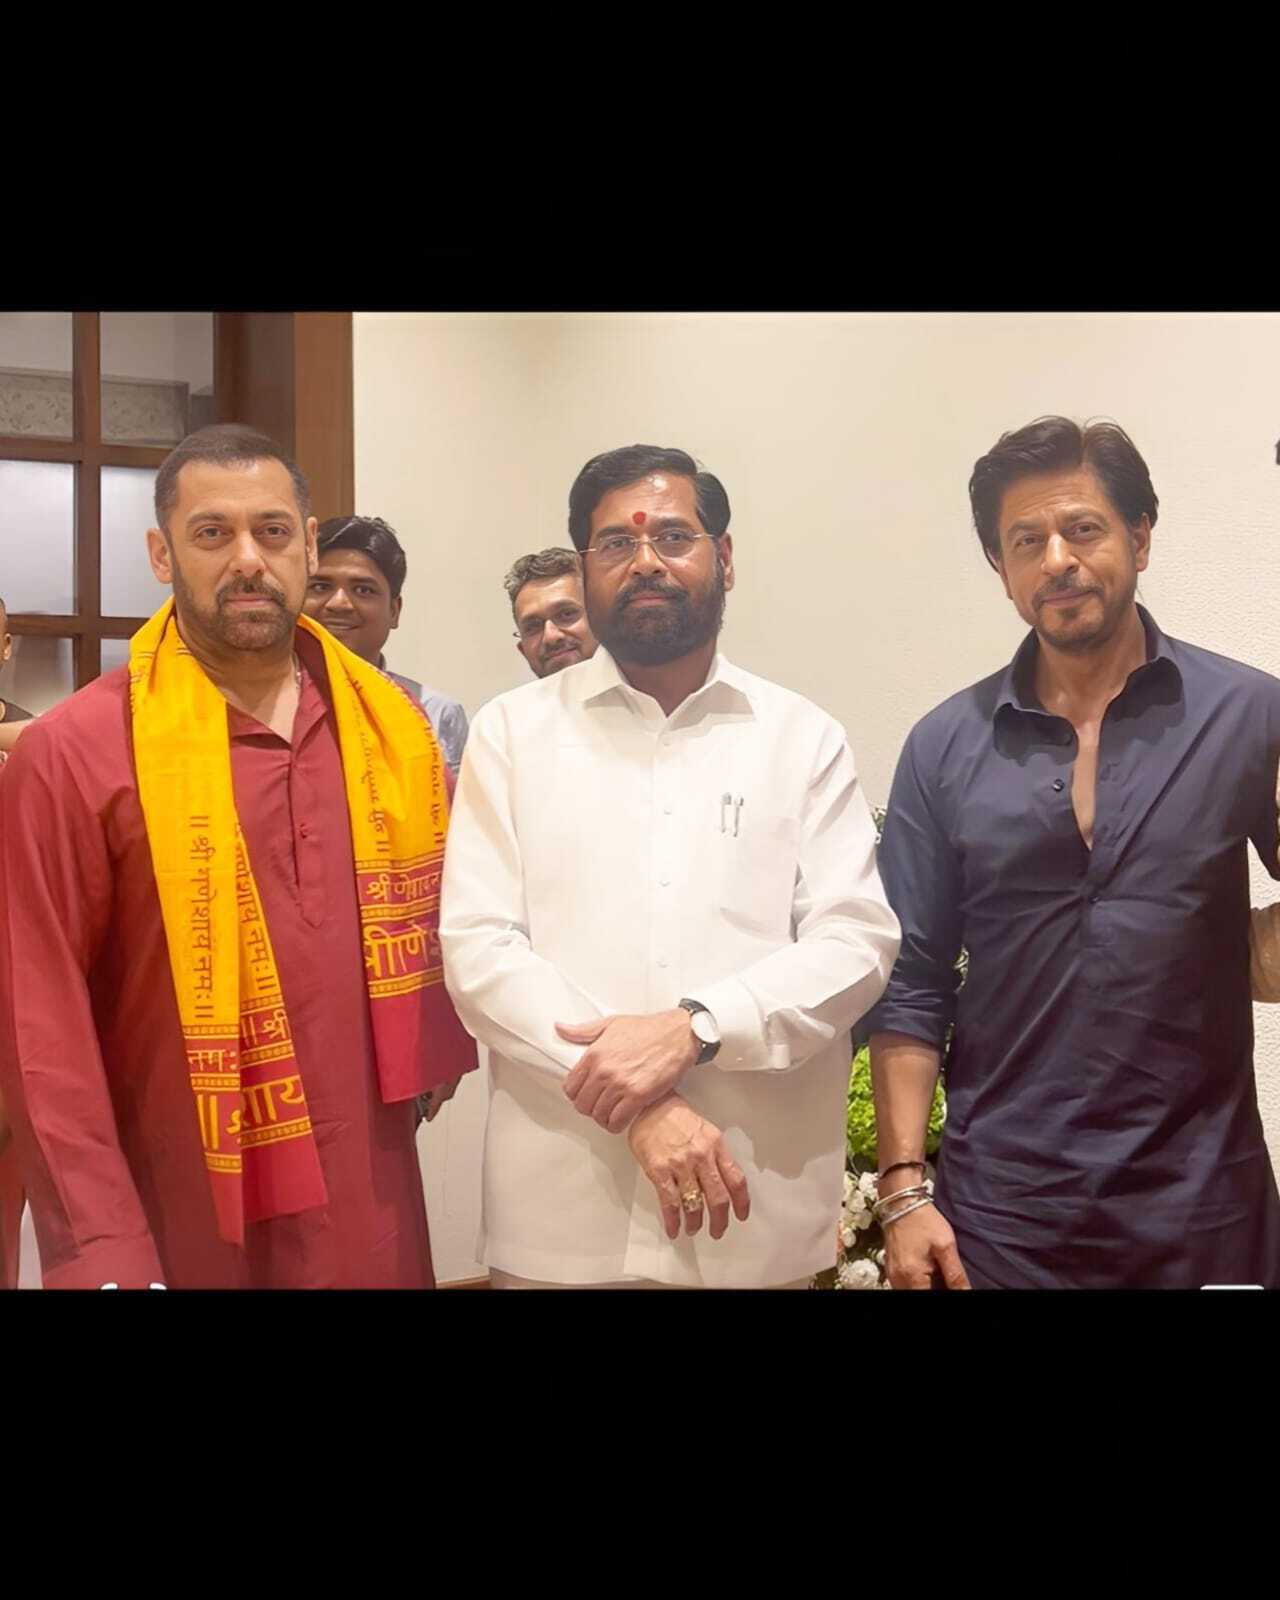 Shah Rukh Khan and Salman Khan reunited at CM Eknath Shinde's Ganesh Chaturthi celebrations at home